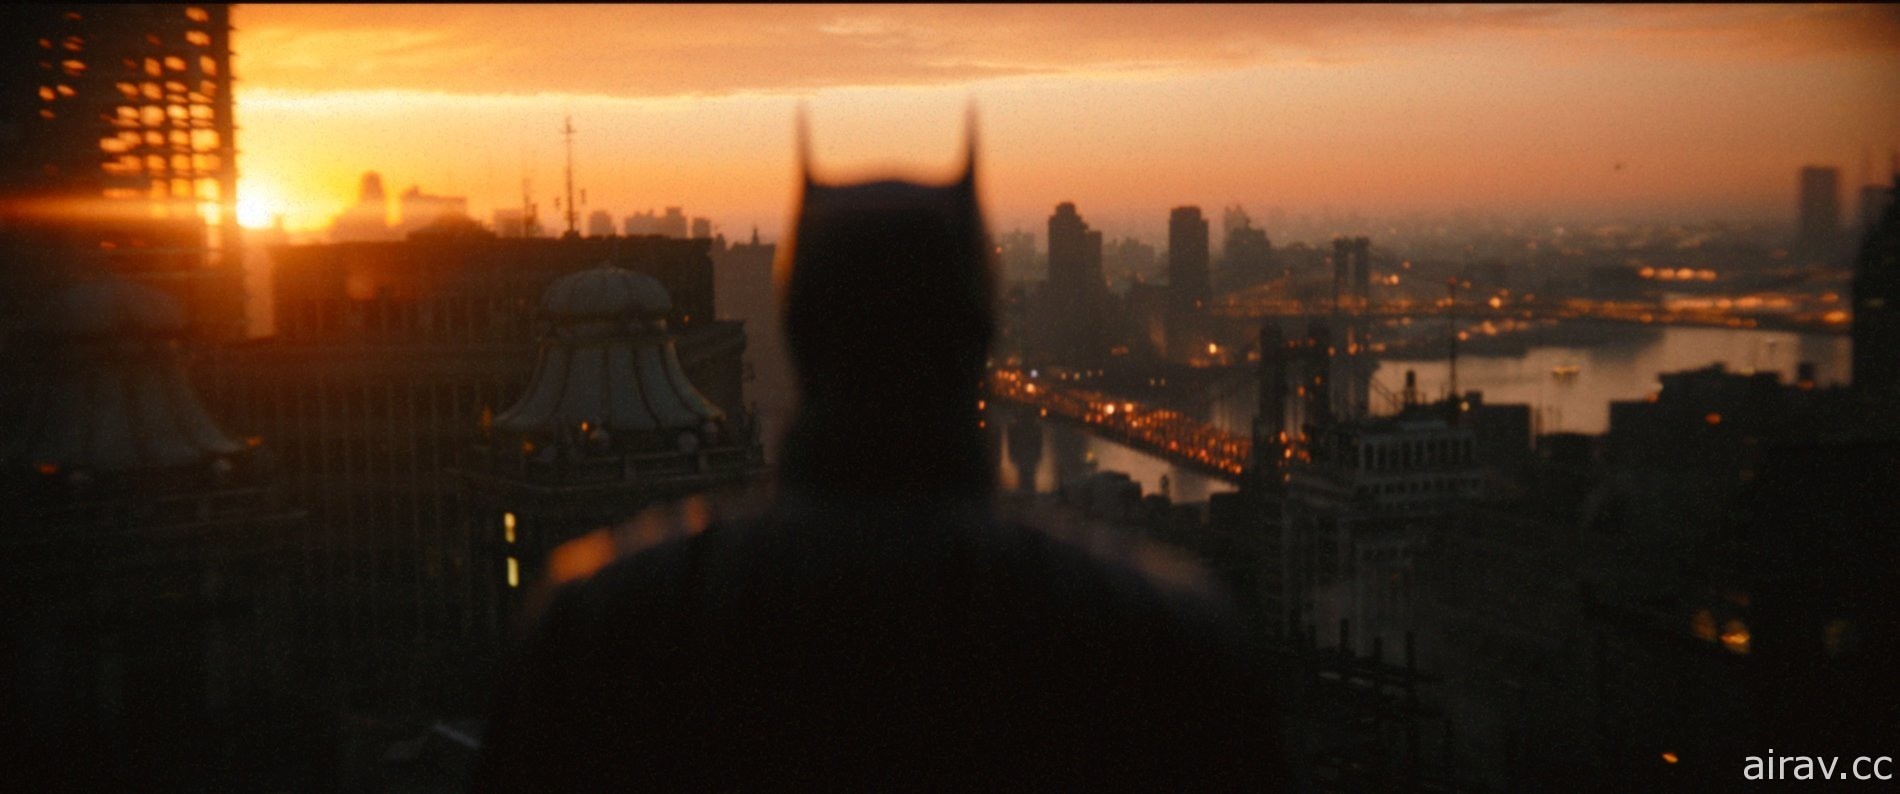 羅伯派汀森《蝙蝠俠》於 CinemaCon 2022 活動上宣布將推續作消息